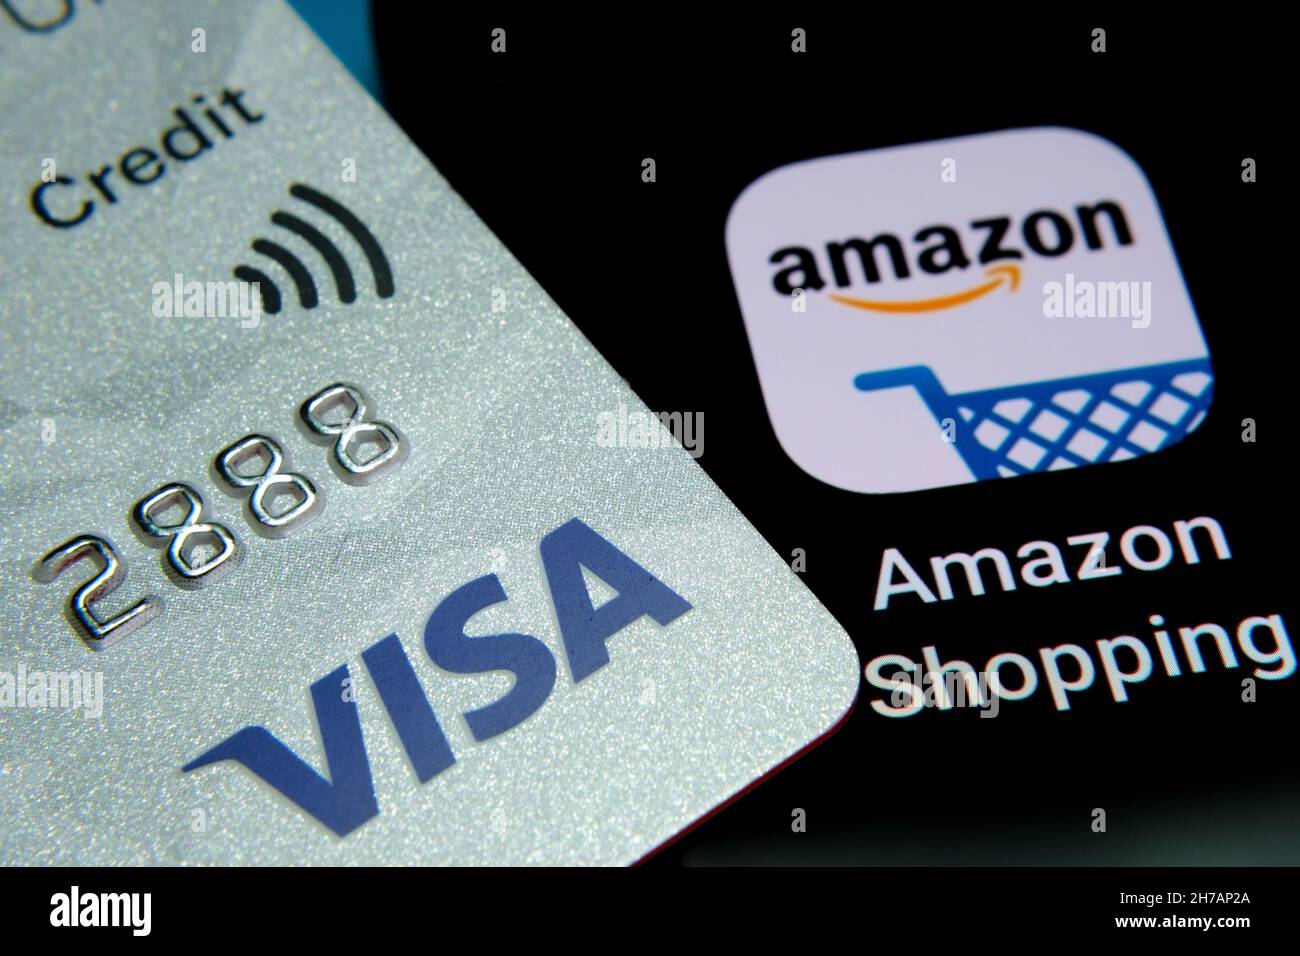 CARTE DE CRÉDIT VISA placée sur le dessus du smartphone avec l'application Amazon Shopping.Concept.Stafford, Royaume-Uni, 21 novembre 2021. Banque D'Images